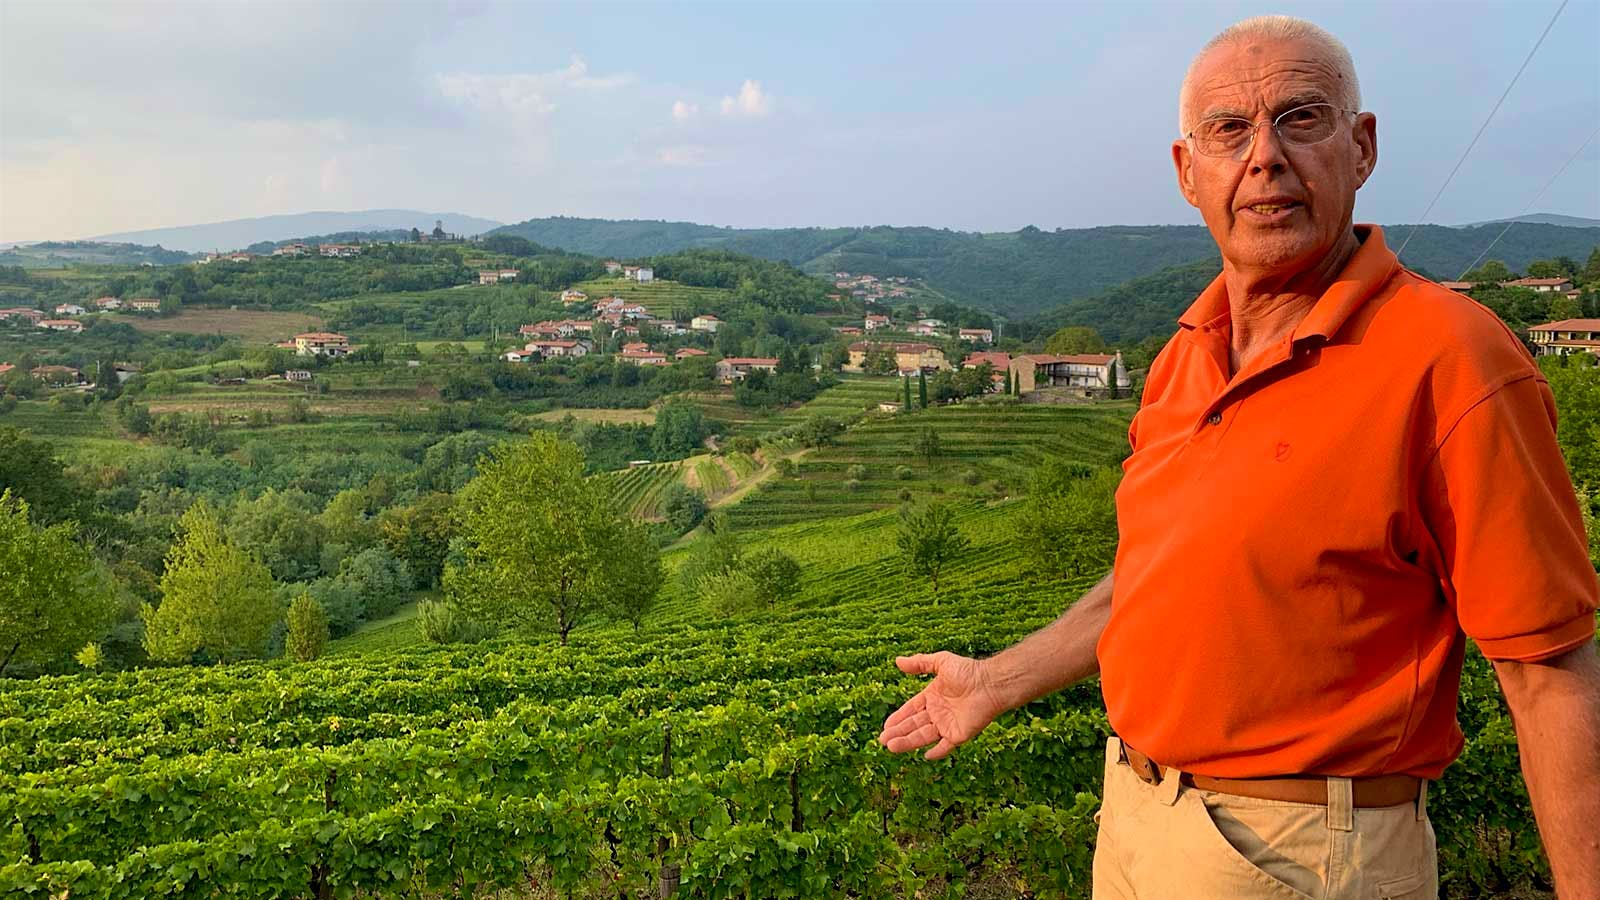 Josko Gravner in the vineyard